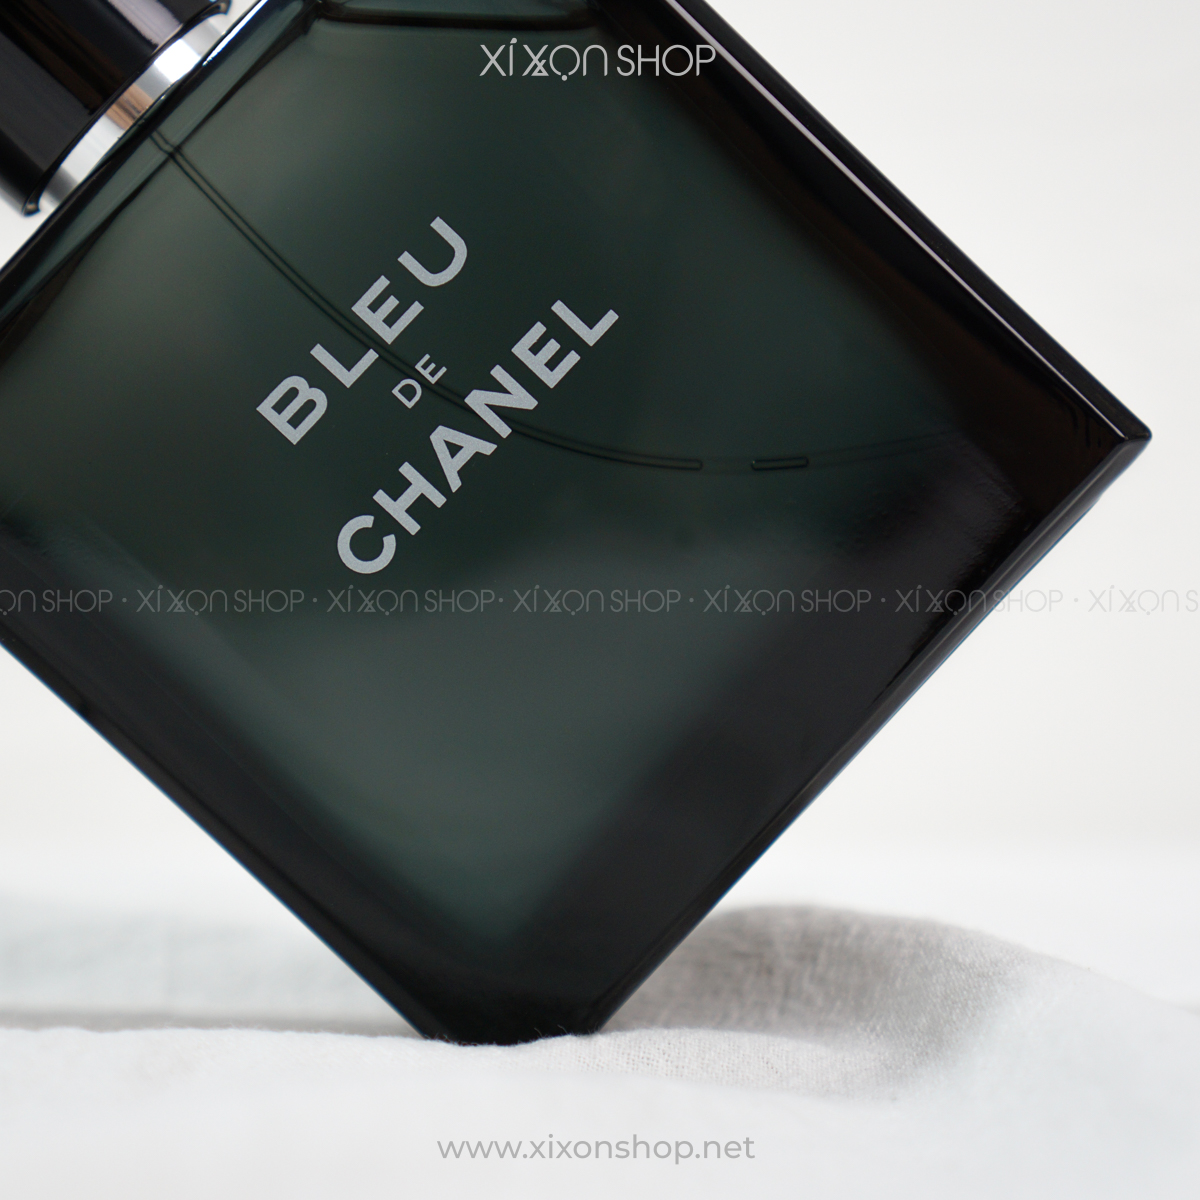 Nước Noa Nam Chanel Bleu De Chanel EDT Chính Hãng Giá Tốt  Vperfume